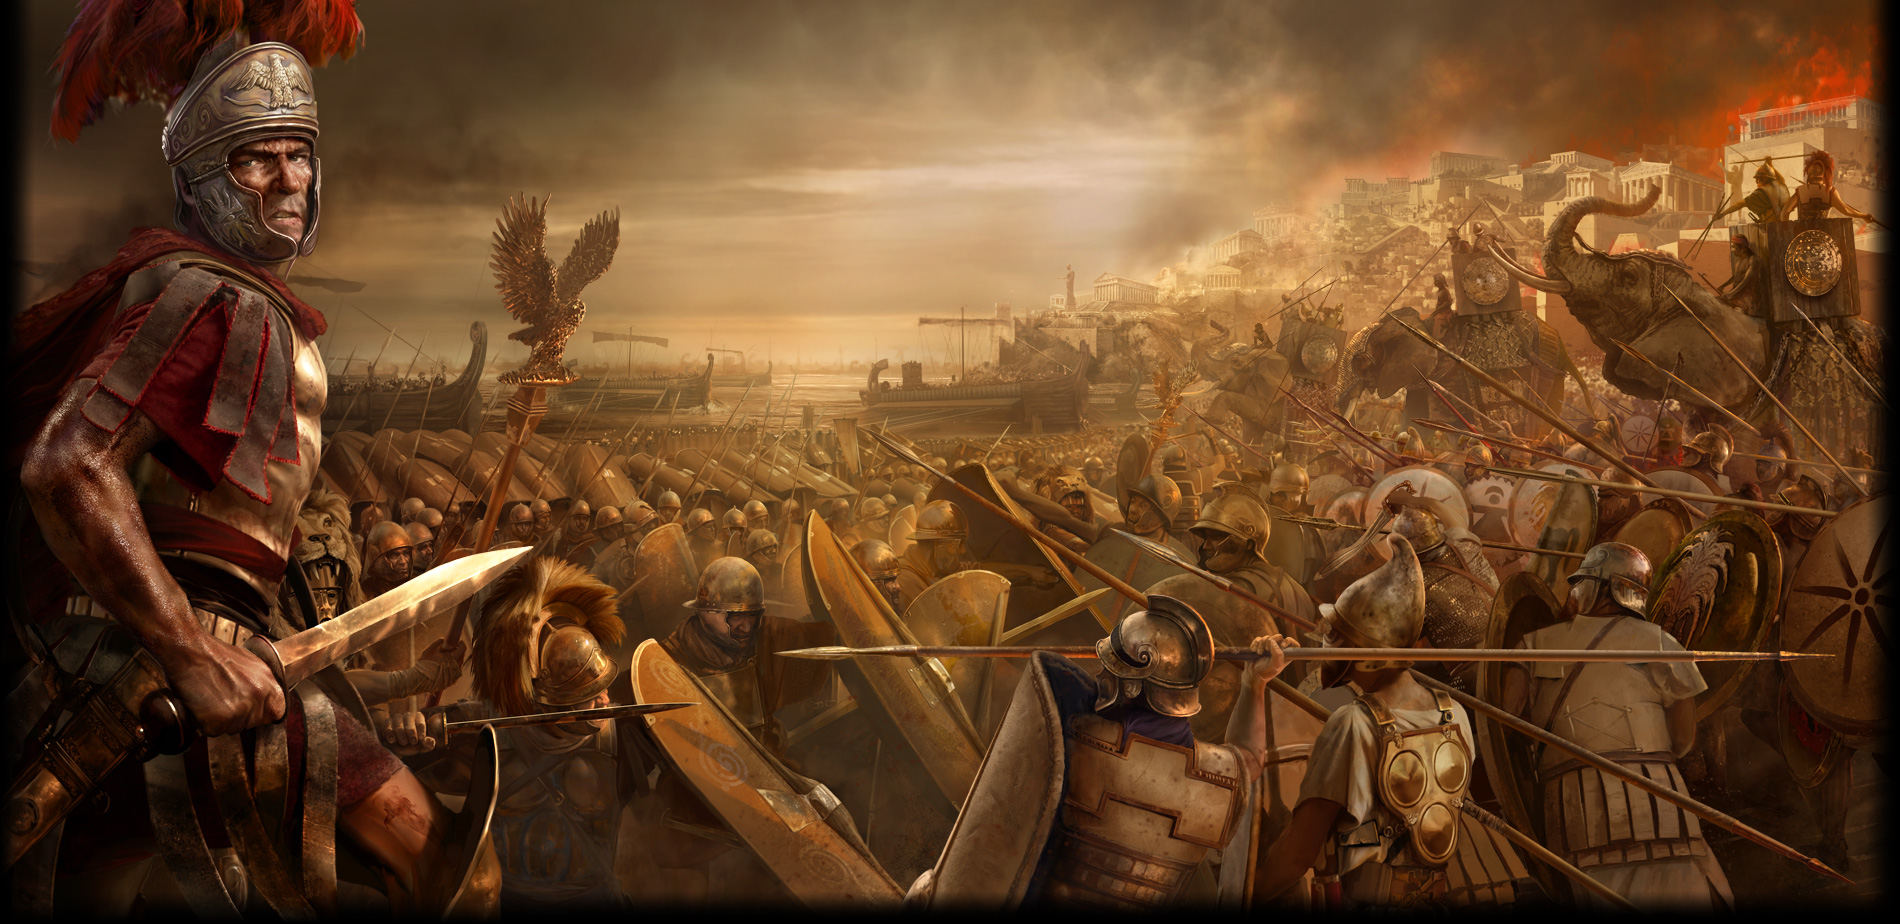 로마 군인 벽지,액션 어드벤처 게임,pc 게임,신화학,cg 삽화,계략